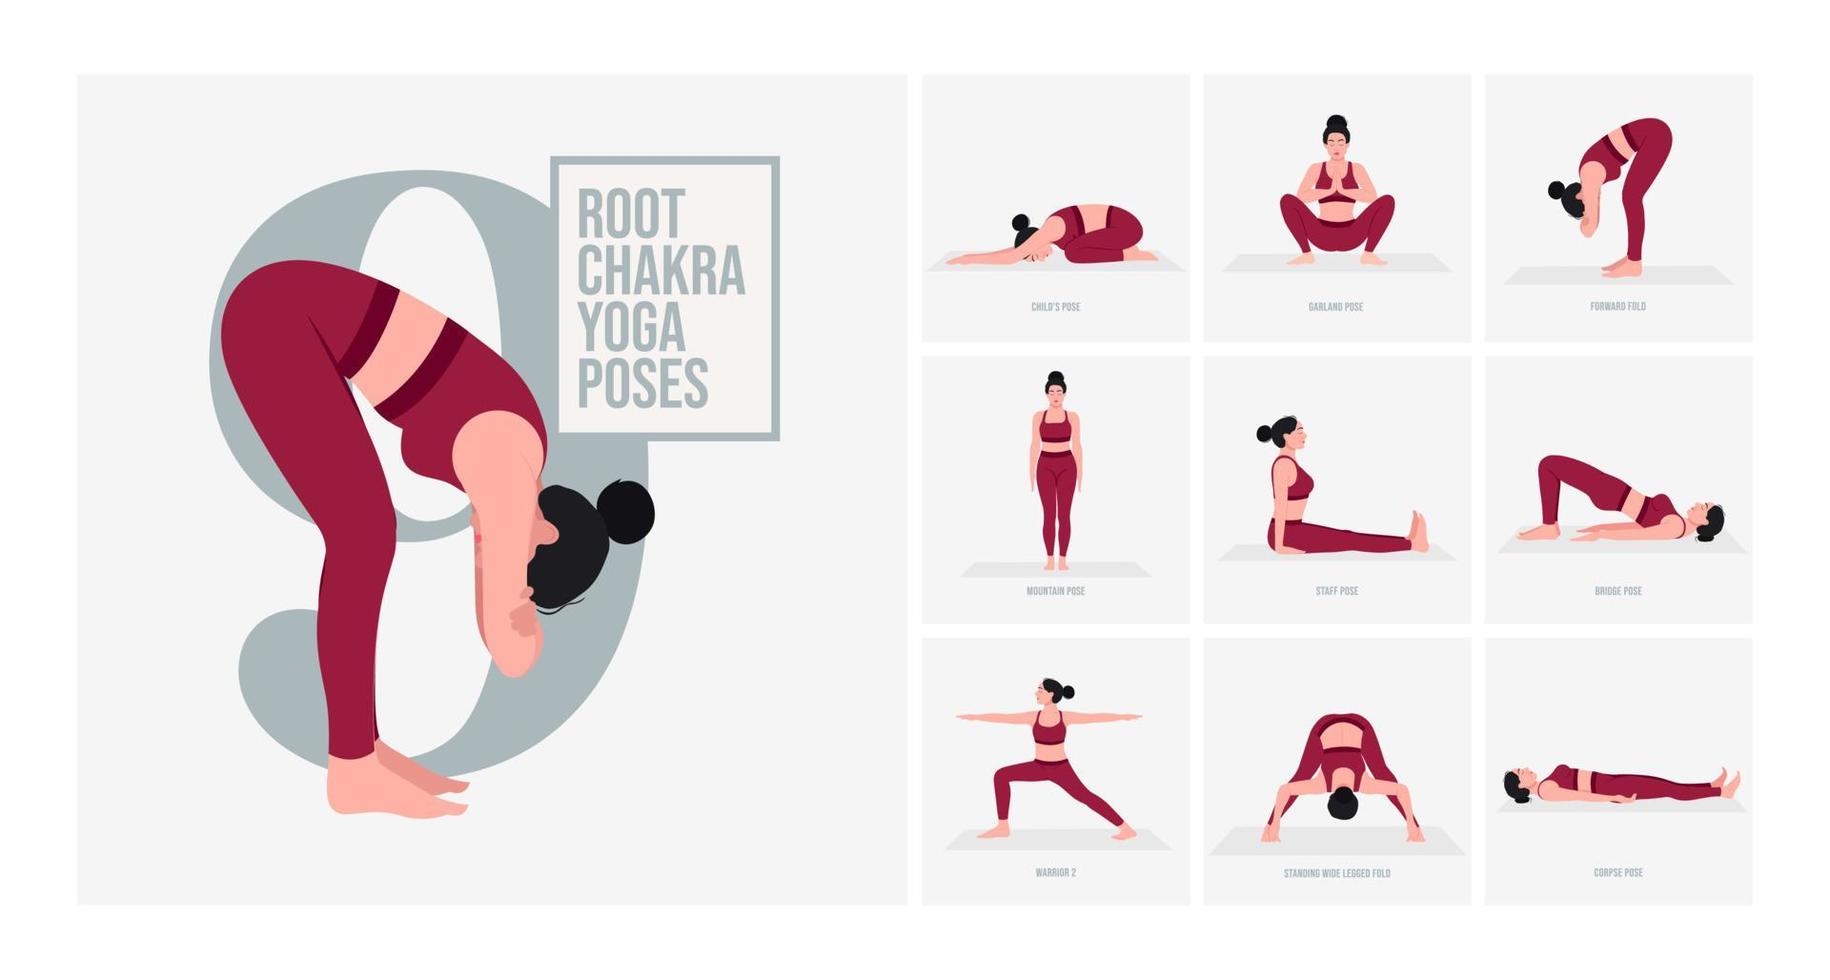 Posturas de yoga del chakra raíz. mujer joven practicando pose de yoga. mujer entrenamiento fitness, aeróbicos y ejercicios. vector